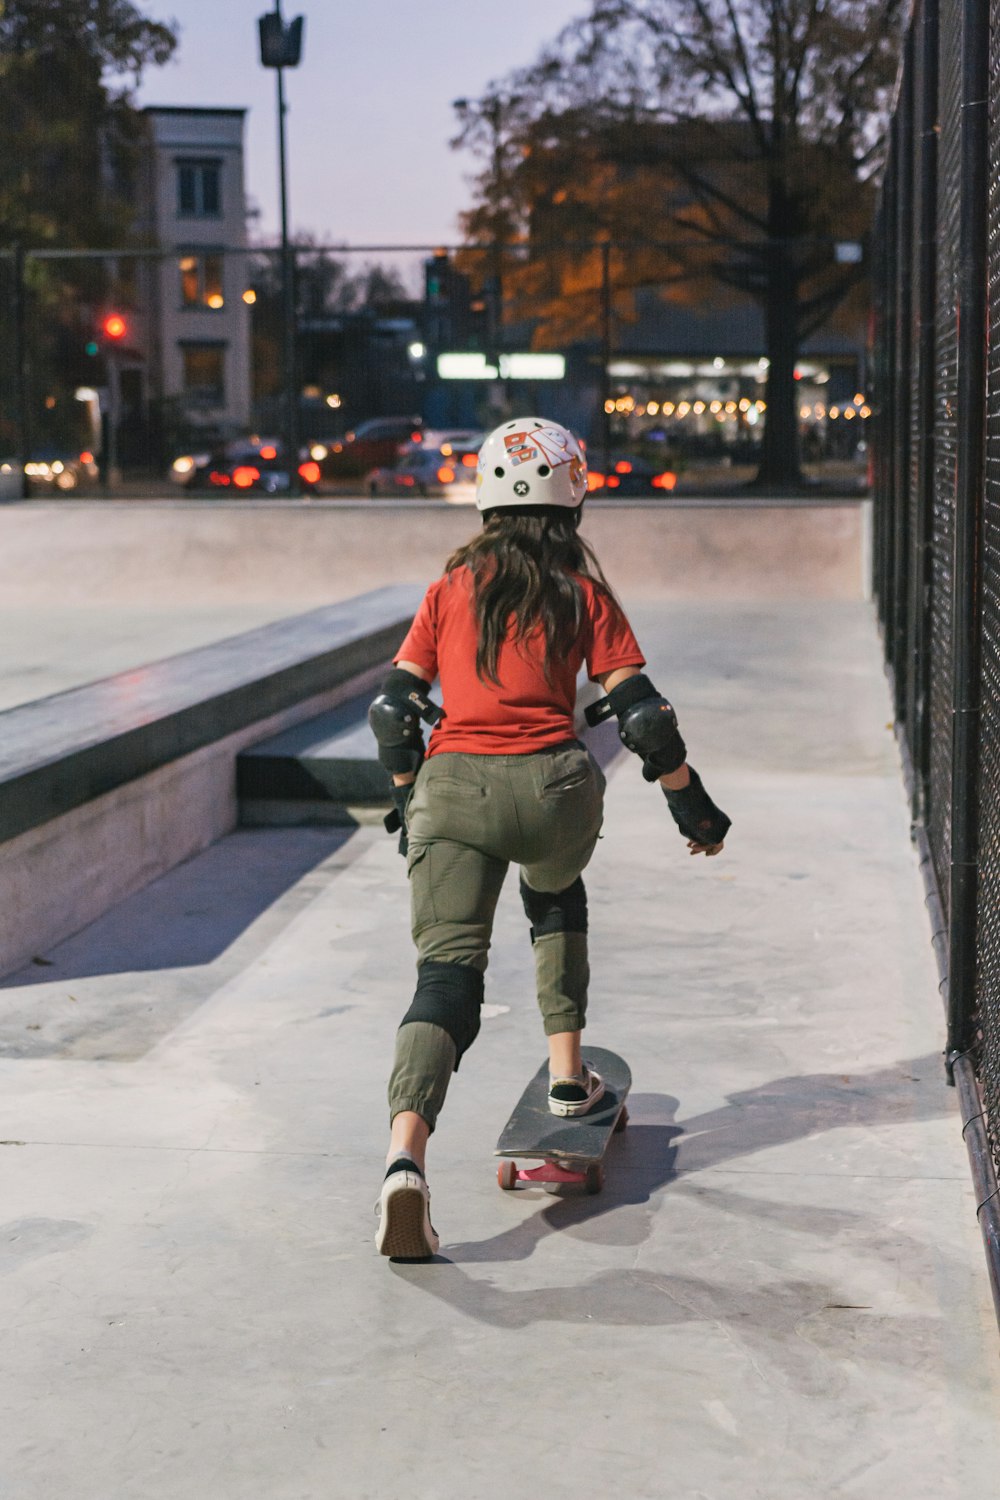 Una niña montando una patineta por una acera